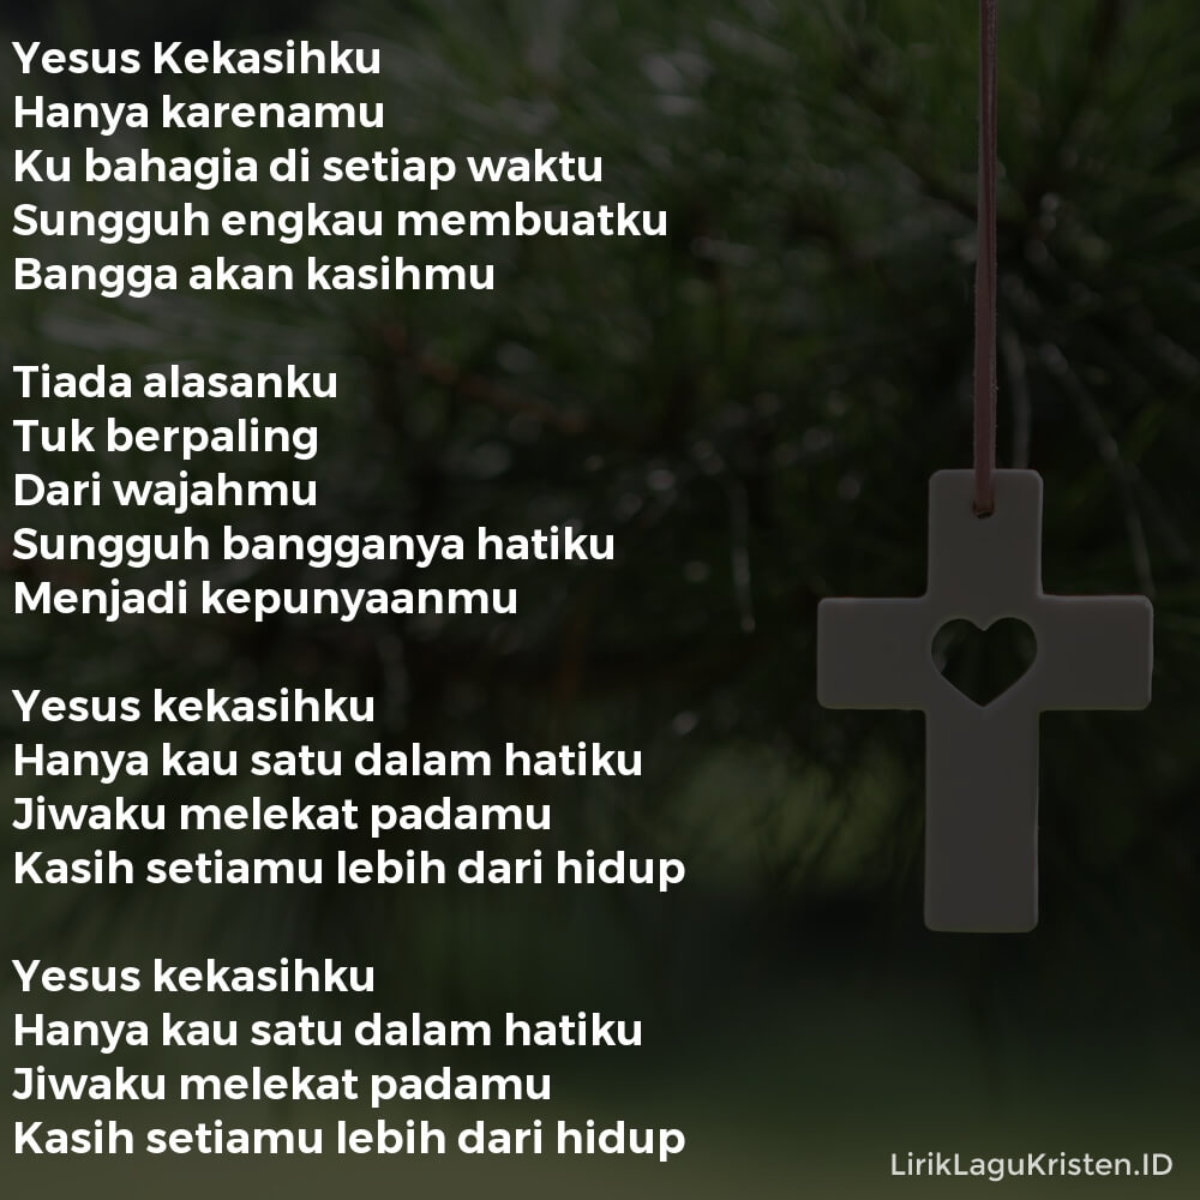 Yesus Kekasihku Lirik Lagu Kristen